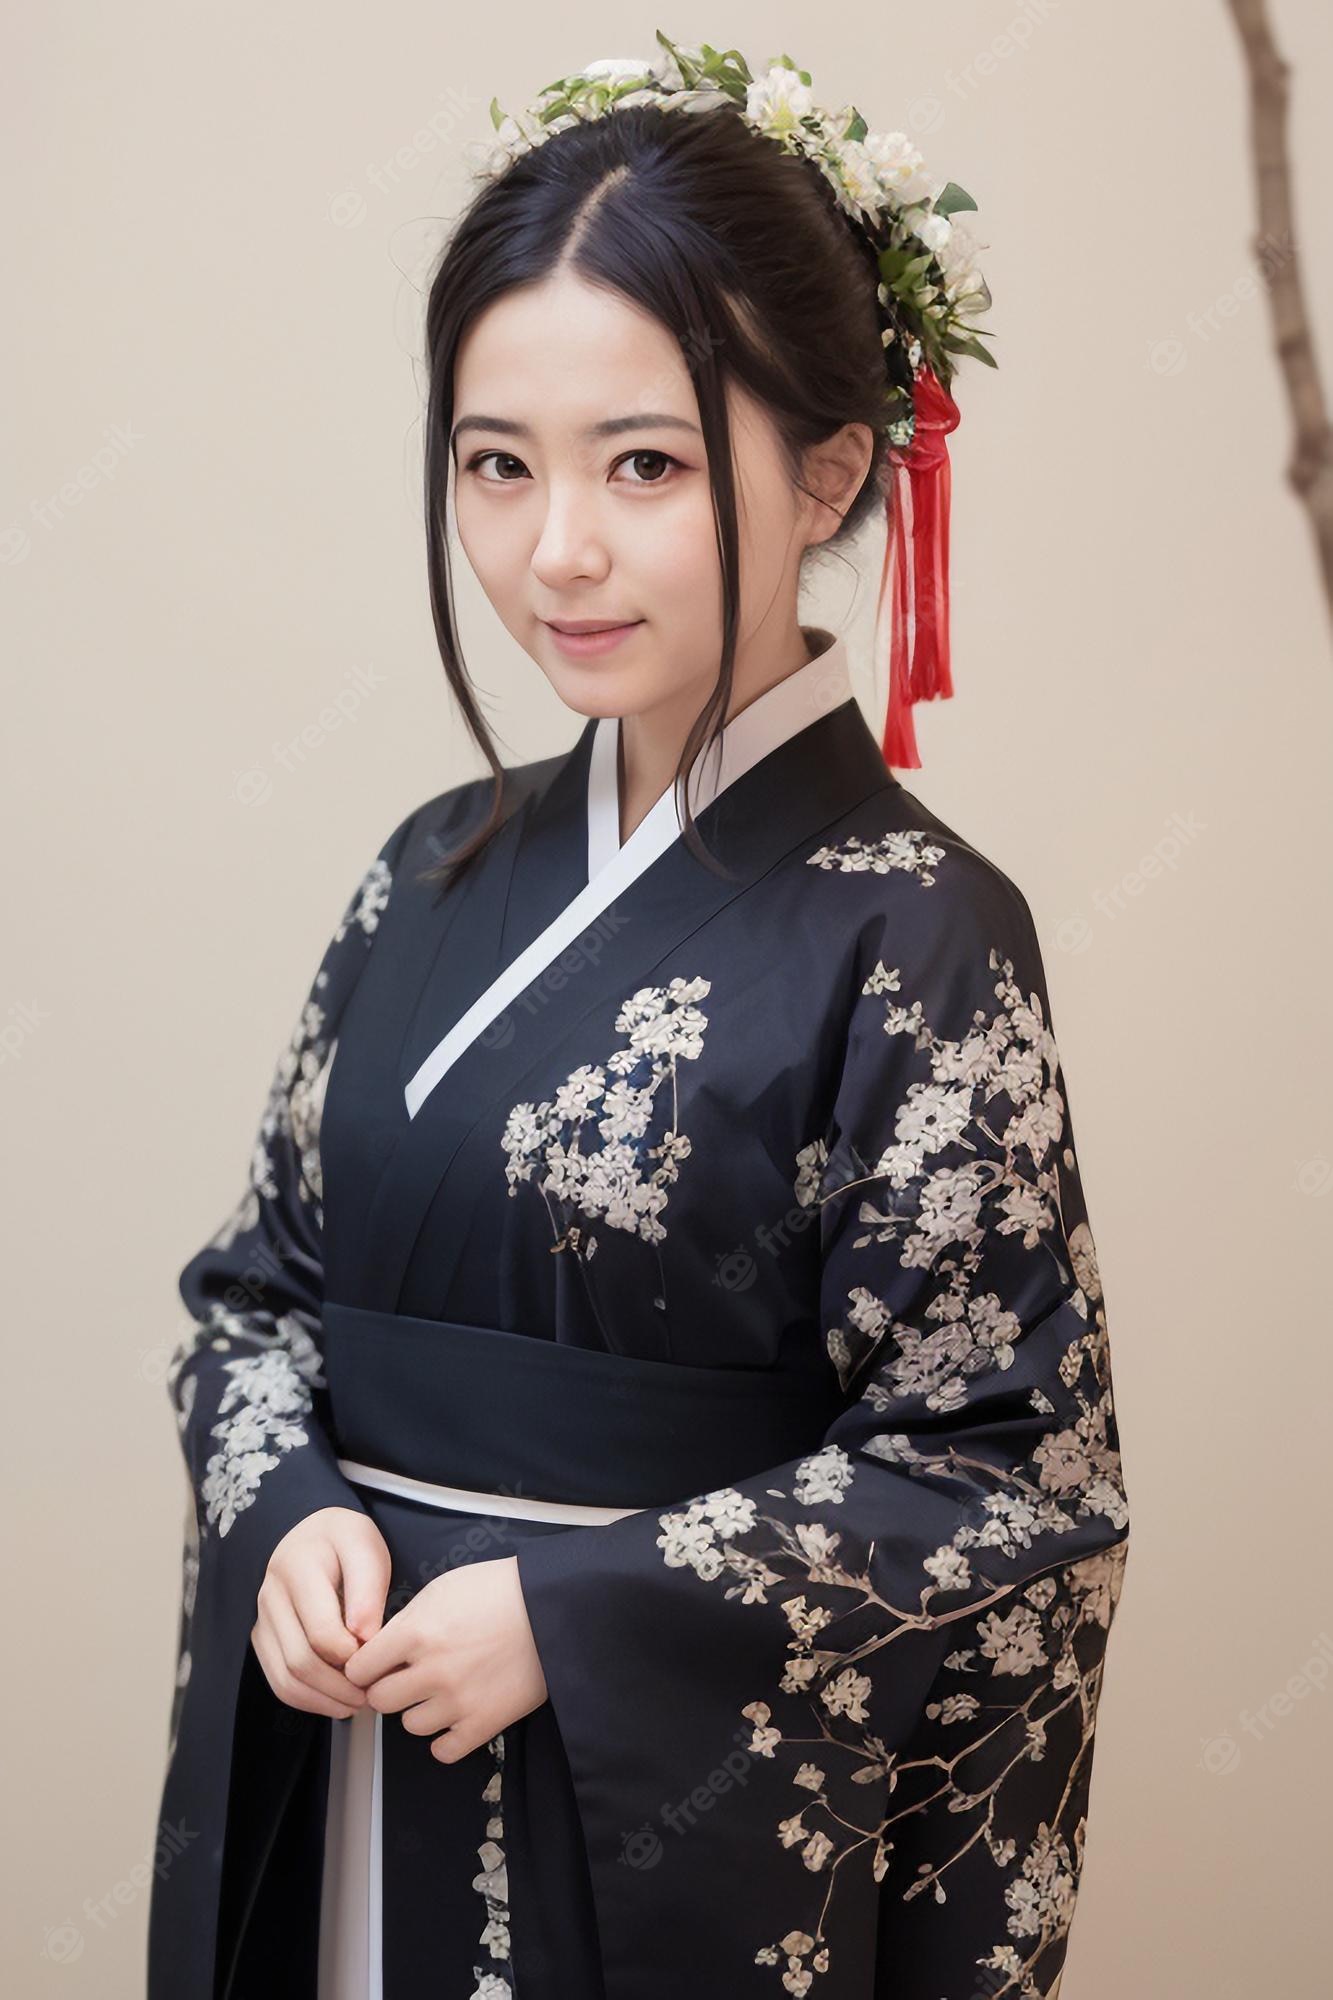 Japanese Dress Image